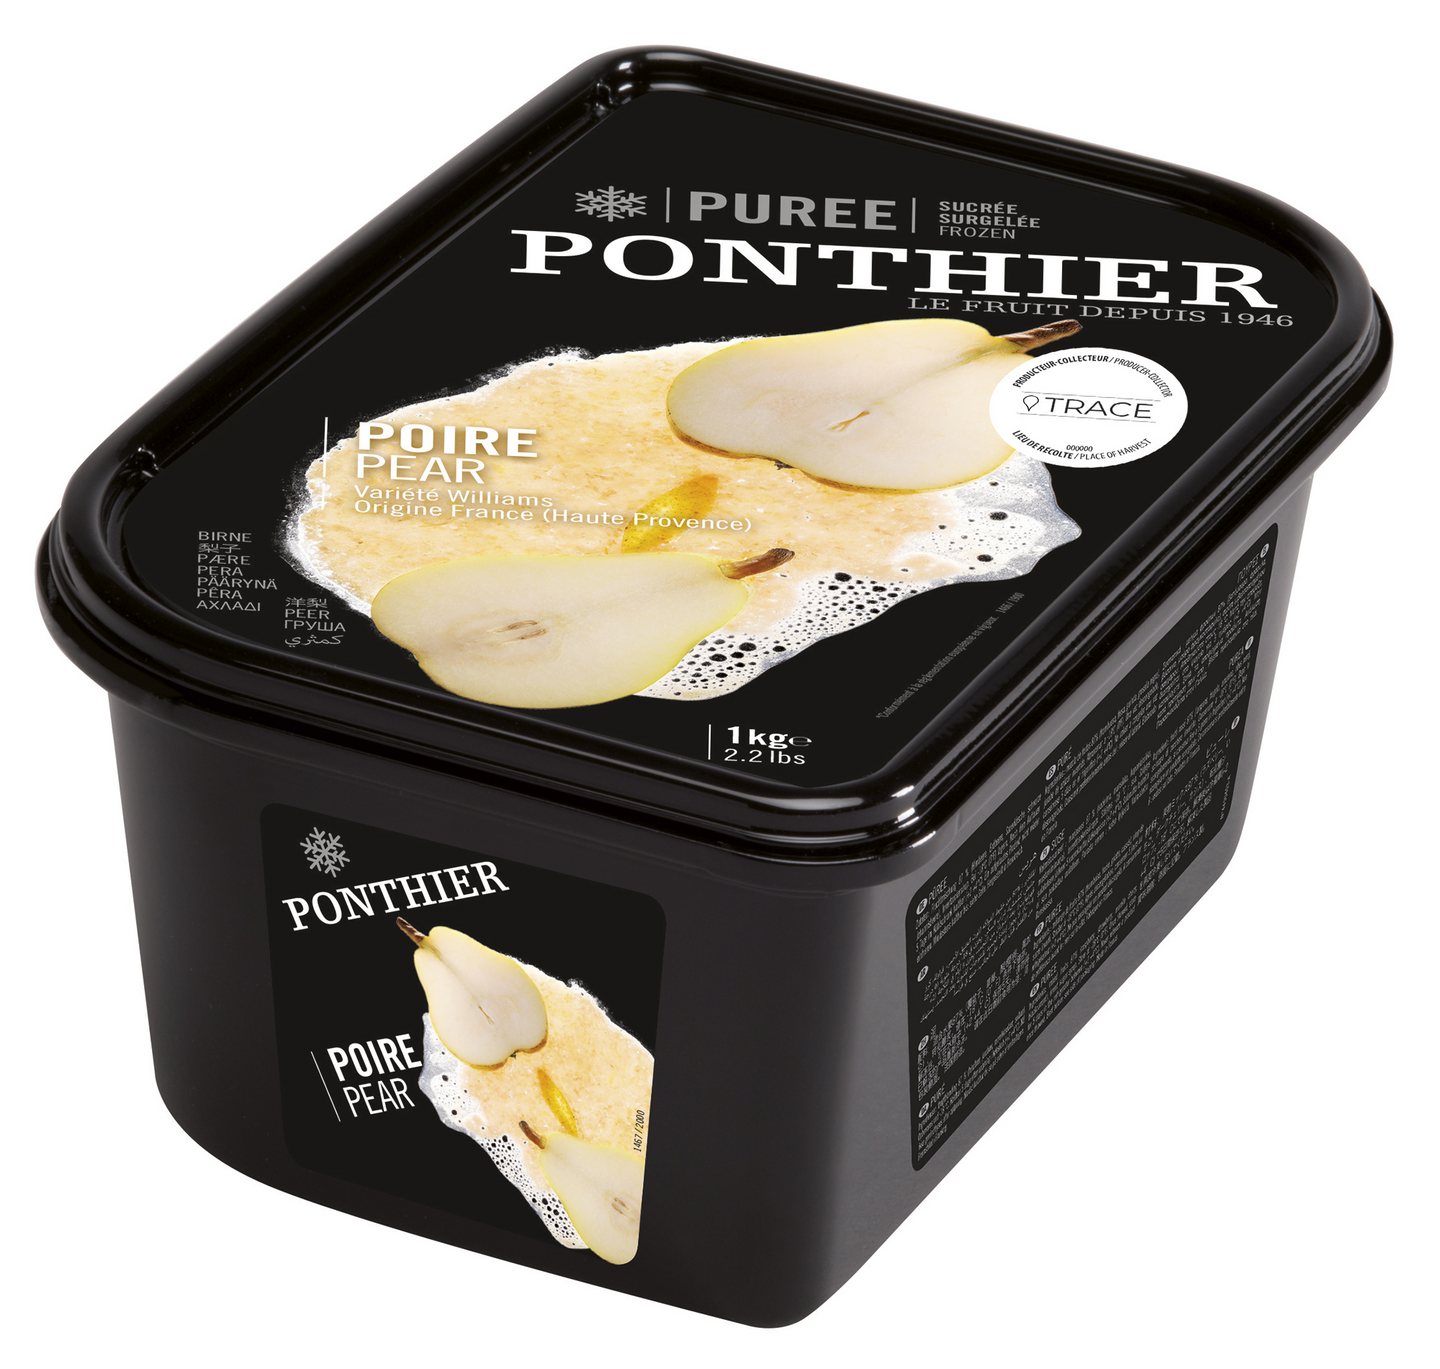 Ponthier päärynäpyree 1kg pakaste